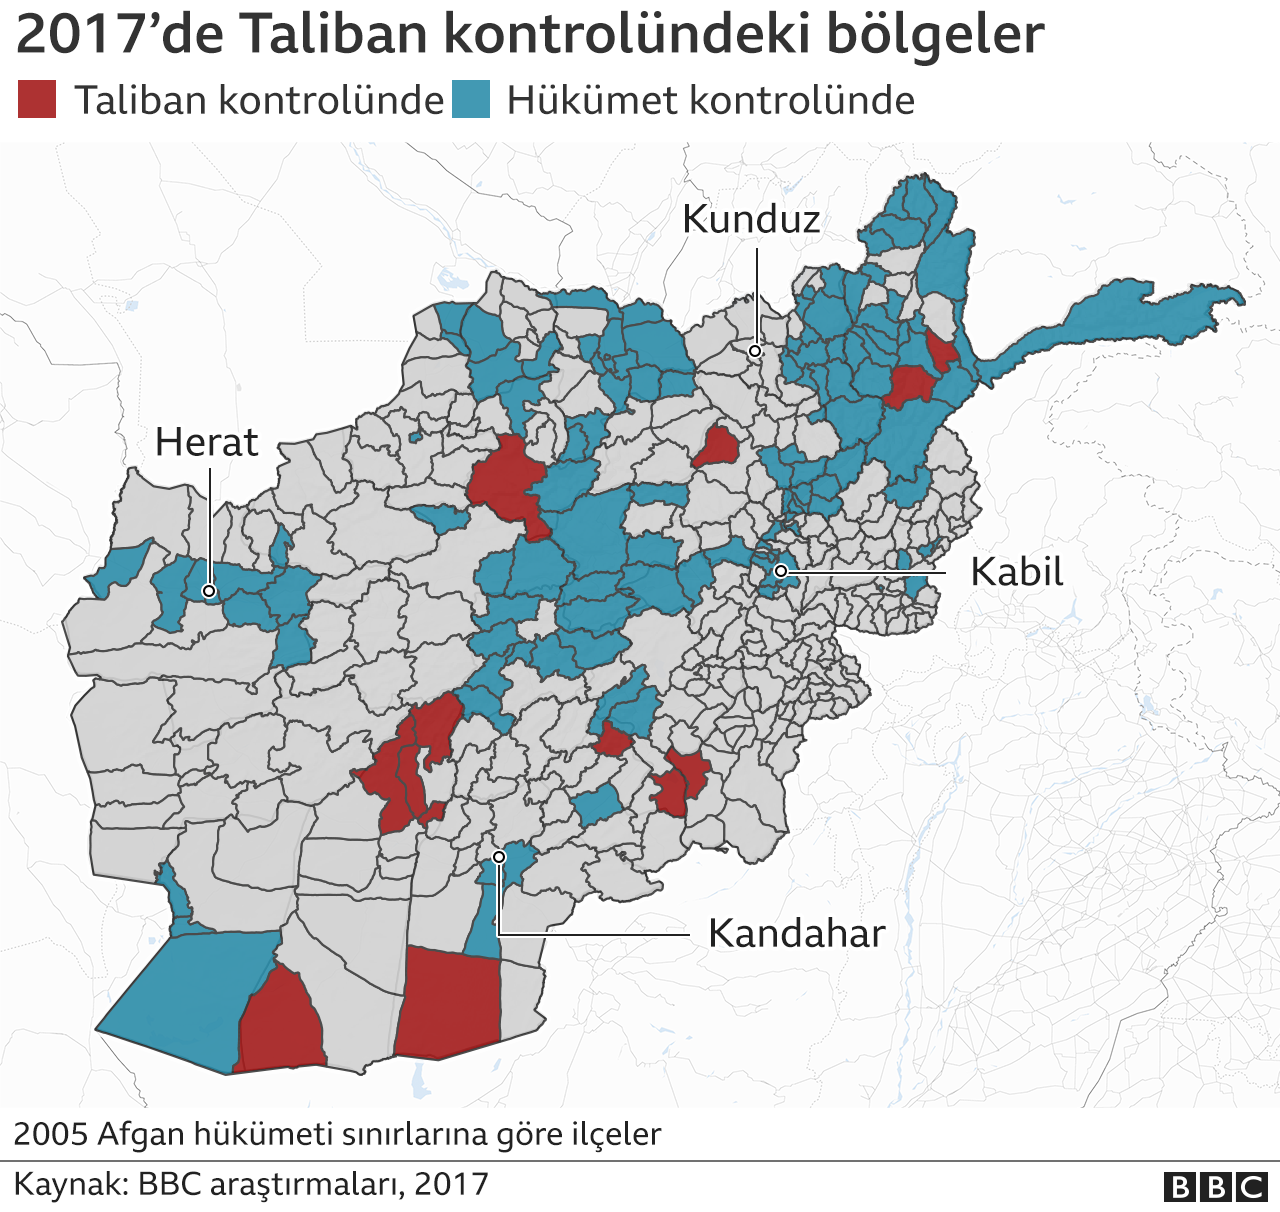 2017'de Taliban kontorlünde olan bölgeler